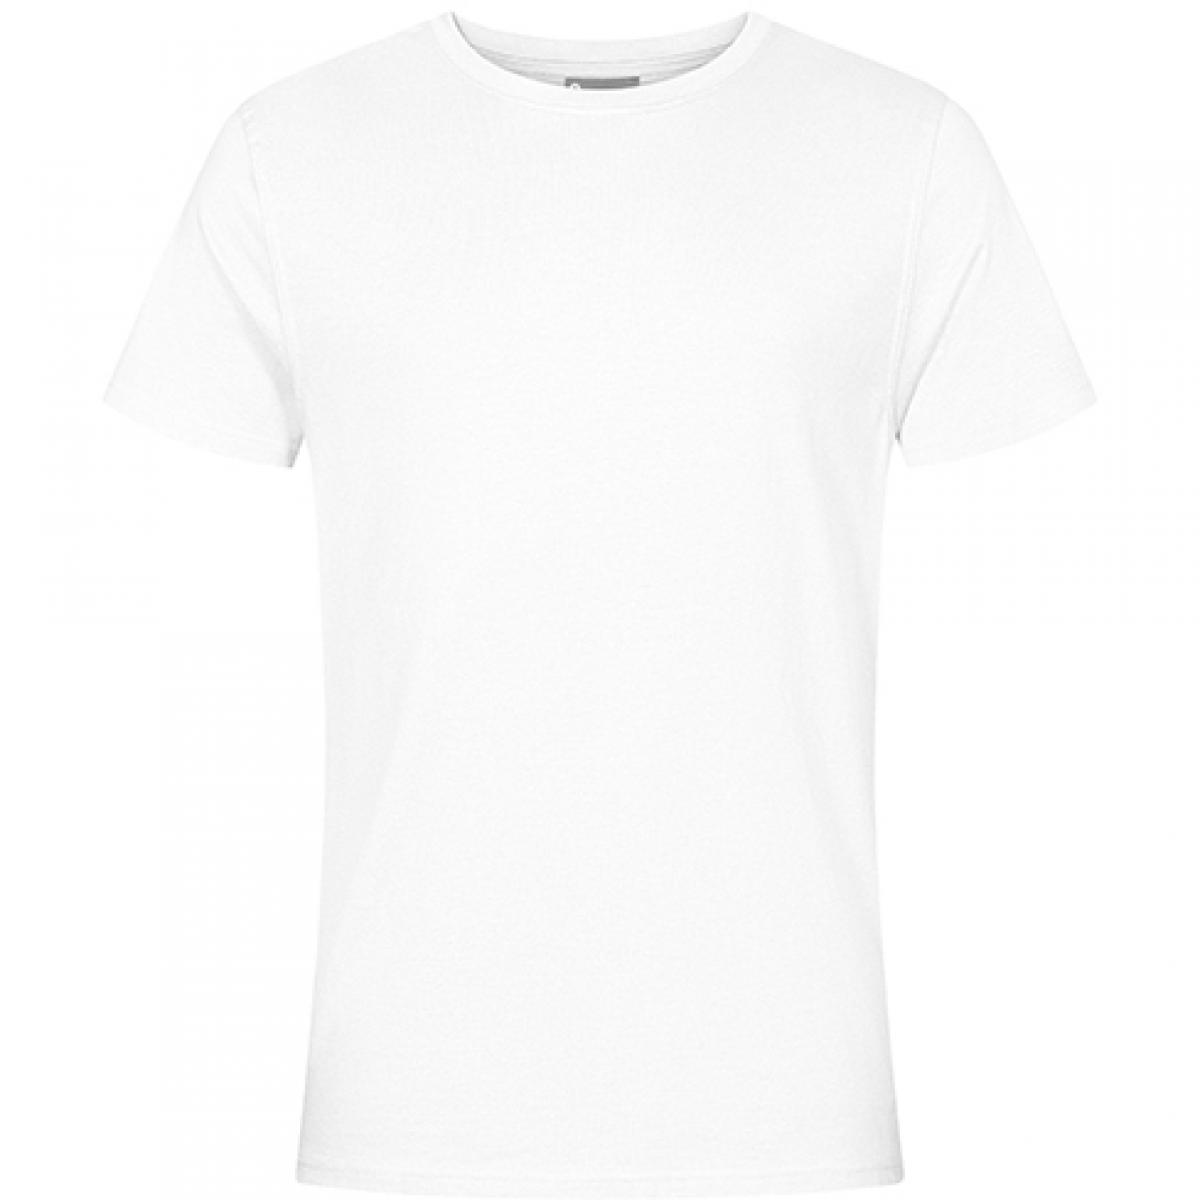 Hersteller: EXCD by Promodoro Herstellernummer: 3077 Artikelbezeichnung: Herren T-Shirt, Single-Jersey Farbe: White